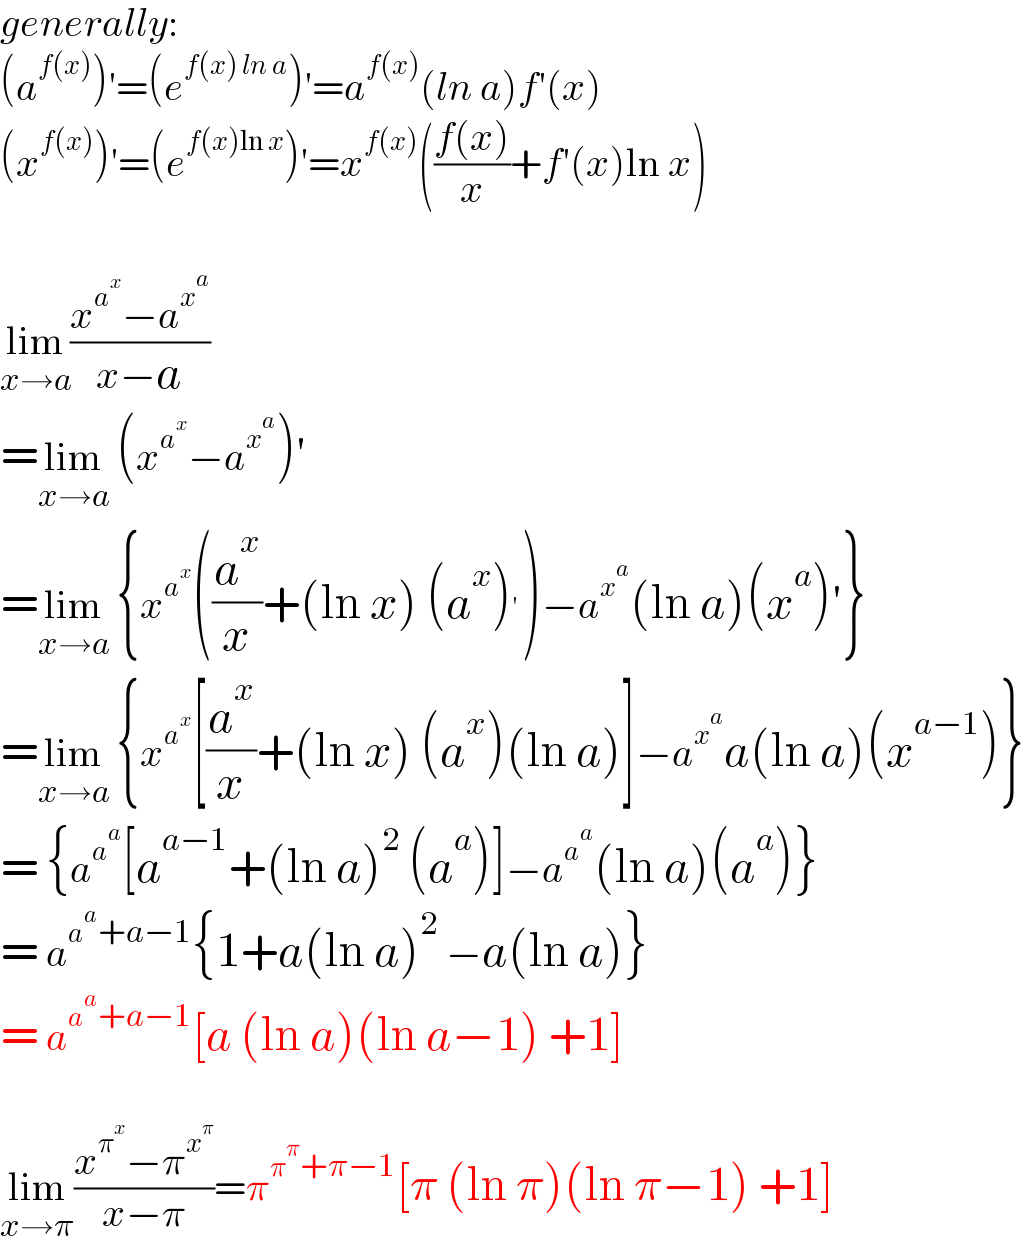 generally:  (a^(f(x)) )′=(e^(f(x) ln a) )′=a^(f(x)) (ln a)f′(x)  (x^(f(x)) )′=(e^(f(x)ln x) )′=x^(f(x)) (((f(x))/x)+f′(x)ln x)    lim_(x→a) ((x^a^x  −a^x^a  )/(x−a))  =lim_(x→a)  (x^a^x  −a^x^a  )′  =lim_(x→a)  {x^a^x  ((a^x /x)+(ln x) (a^x )^′ )−a^x^a  (ln a)(x^a )′}  =lim_(x→a)  {x^a^x  [(a^x /x)+(ln x) (a^x )(ln a)]−a^x^a  a(ln a)(x^(a−1) )}  = {a^a^a  [a^(a−1) +(ln a)^2  (a^a )]−a^a^a  (ln a)(a^a )}  = a^(a^a +a−1) {1+a(ln a)^2  −a(ln a)}  = a^(a^a +a−1) [a (ln a)(ln a−1) +1]    lim_(x→π) ((x^π^x  −π^x^π  )/(x−π))=π^(π^π +π−1) [π (ln π)(ln π−1) +1]  